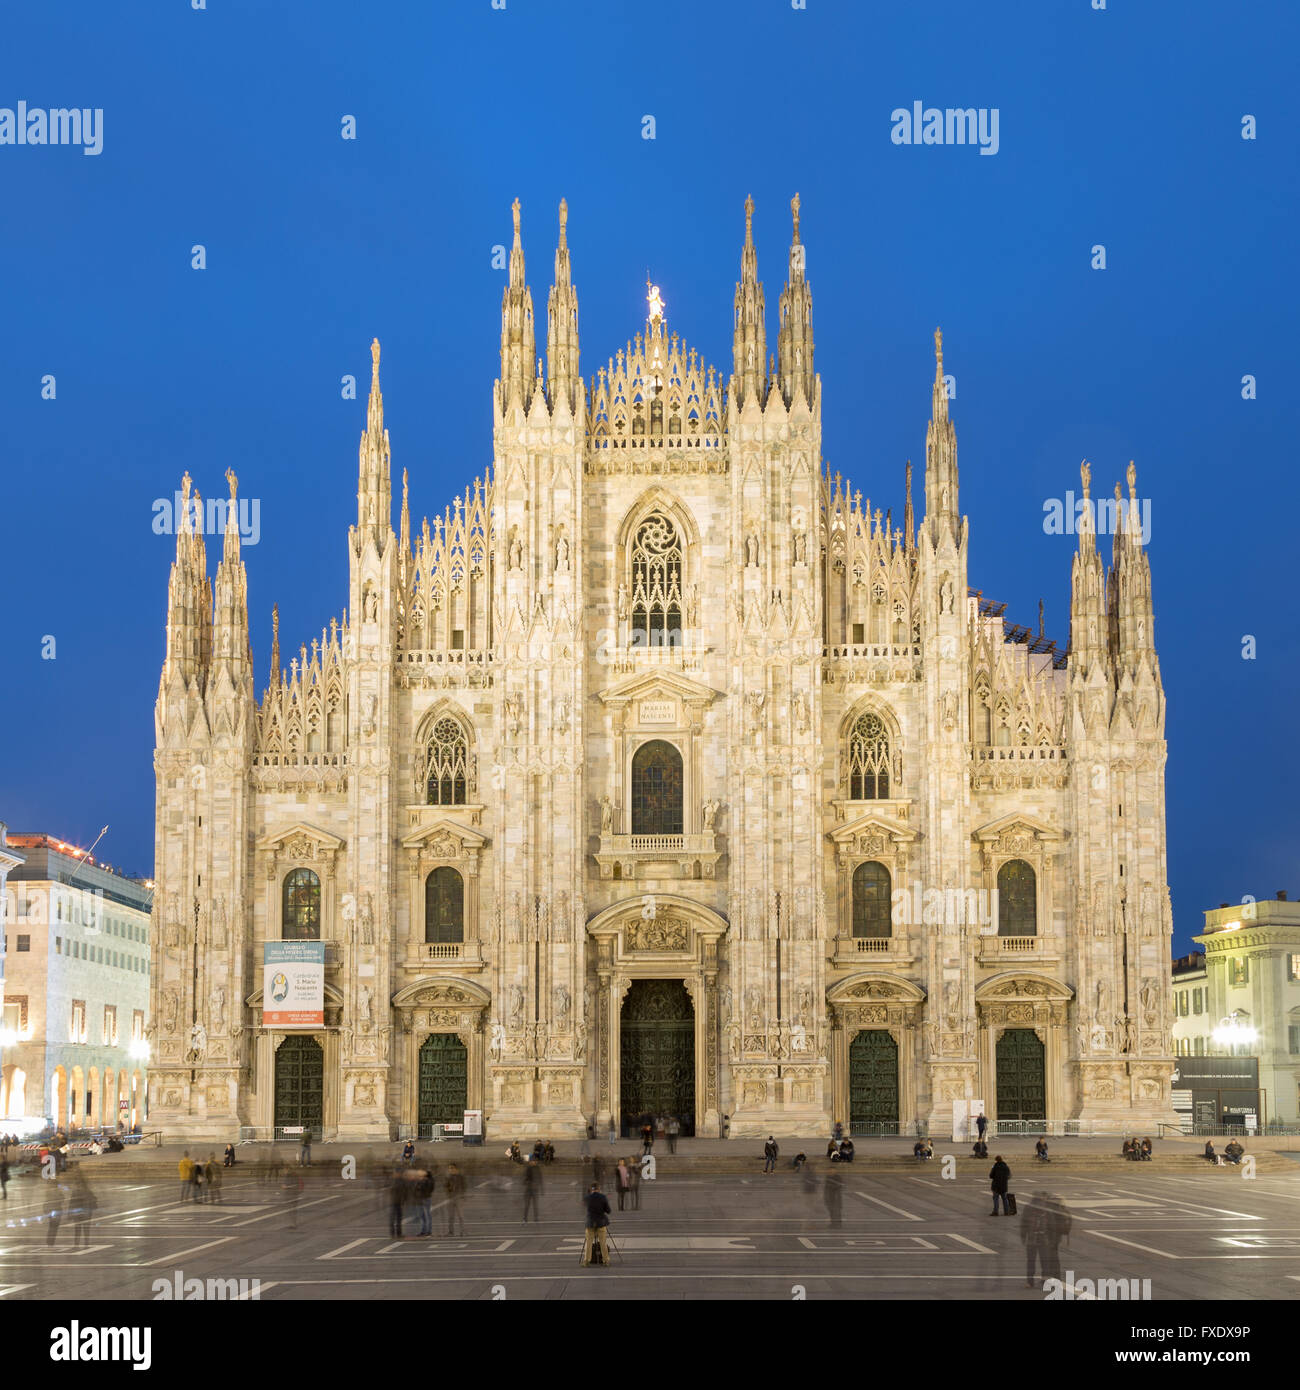 La cathédrale de Milan, au crépuscule, en vue de face, la Piazza del Duomo, Milan, Italie Banque D'Images